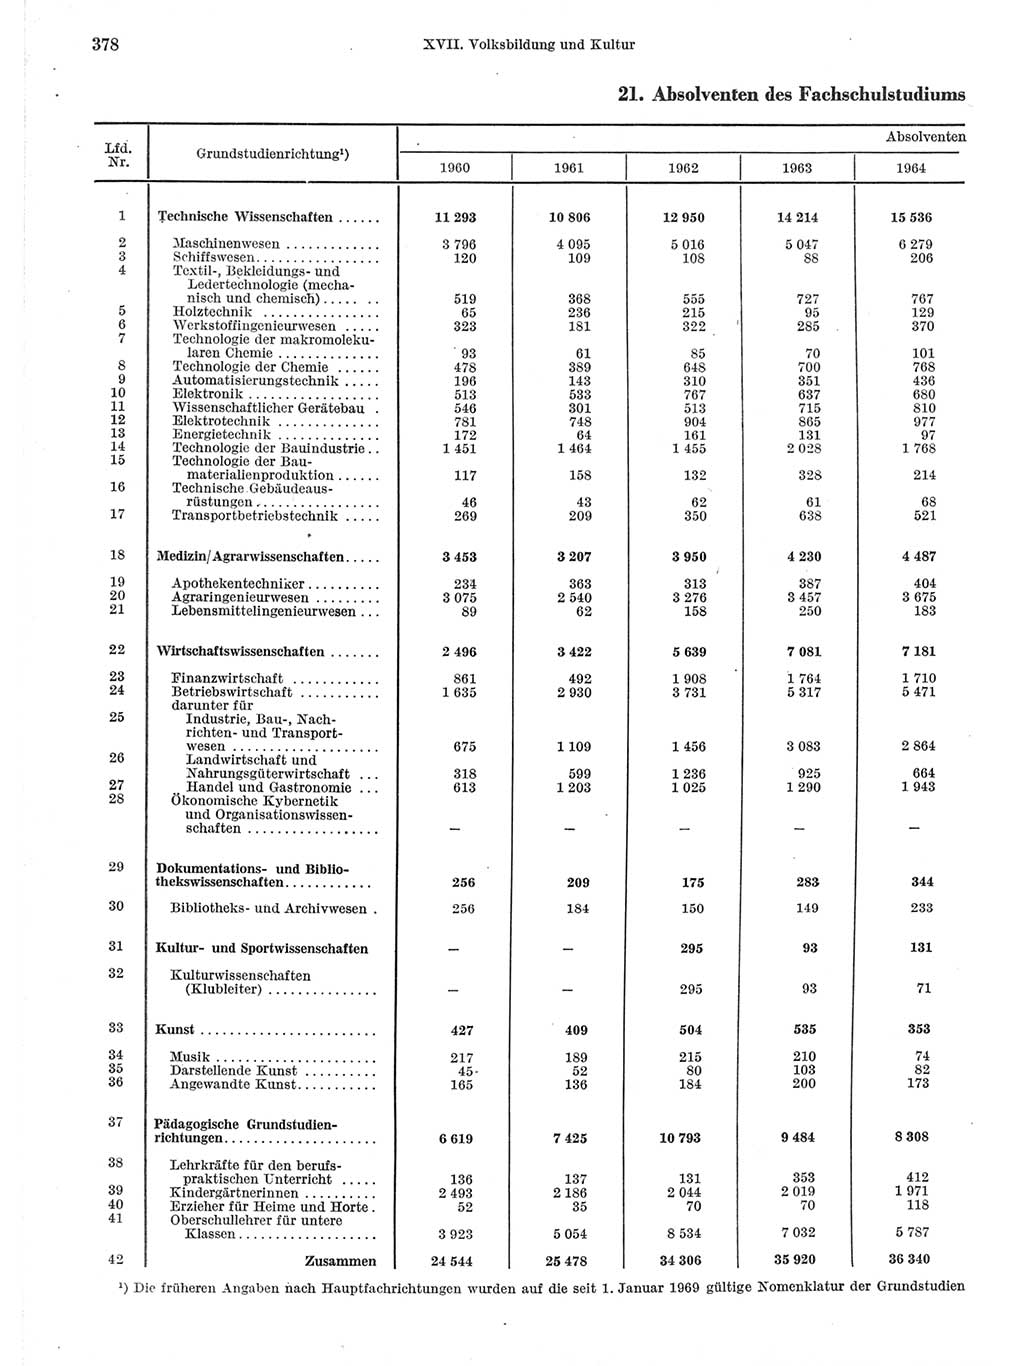 Statistisches Jahrbuch der Deutschen Demokratischen Republik (DDR) 1971, Seite 378 (Stat. Jb. DDR 1971, S. 378)